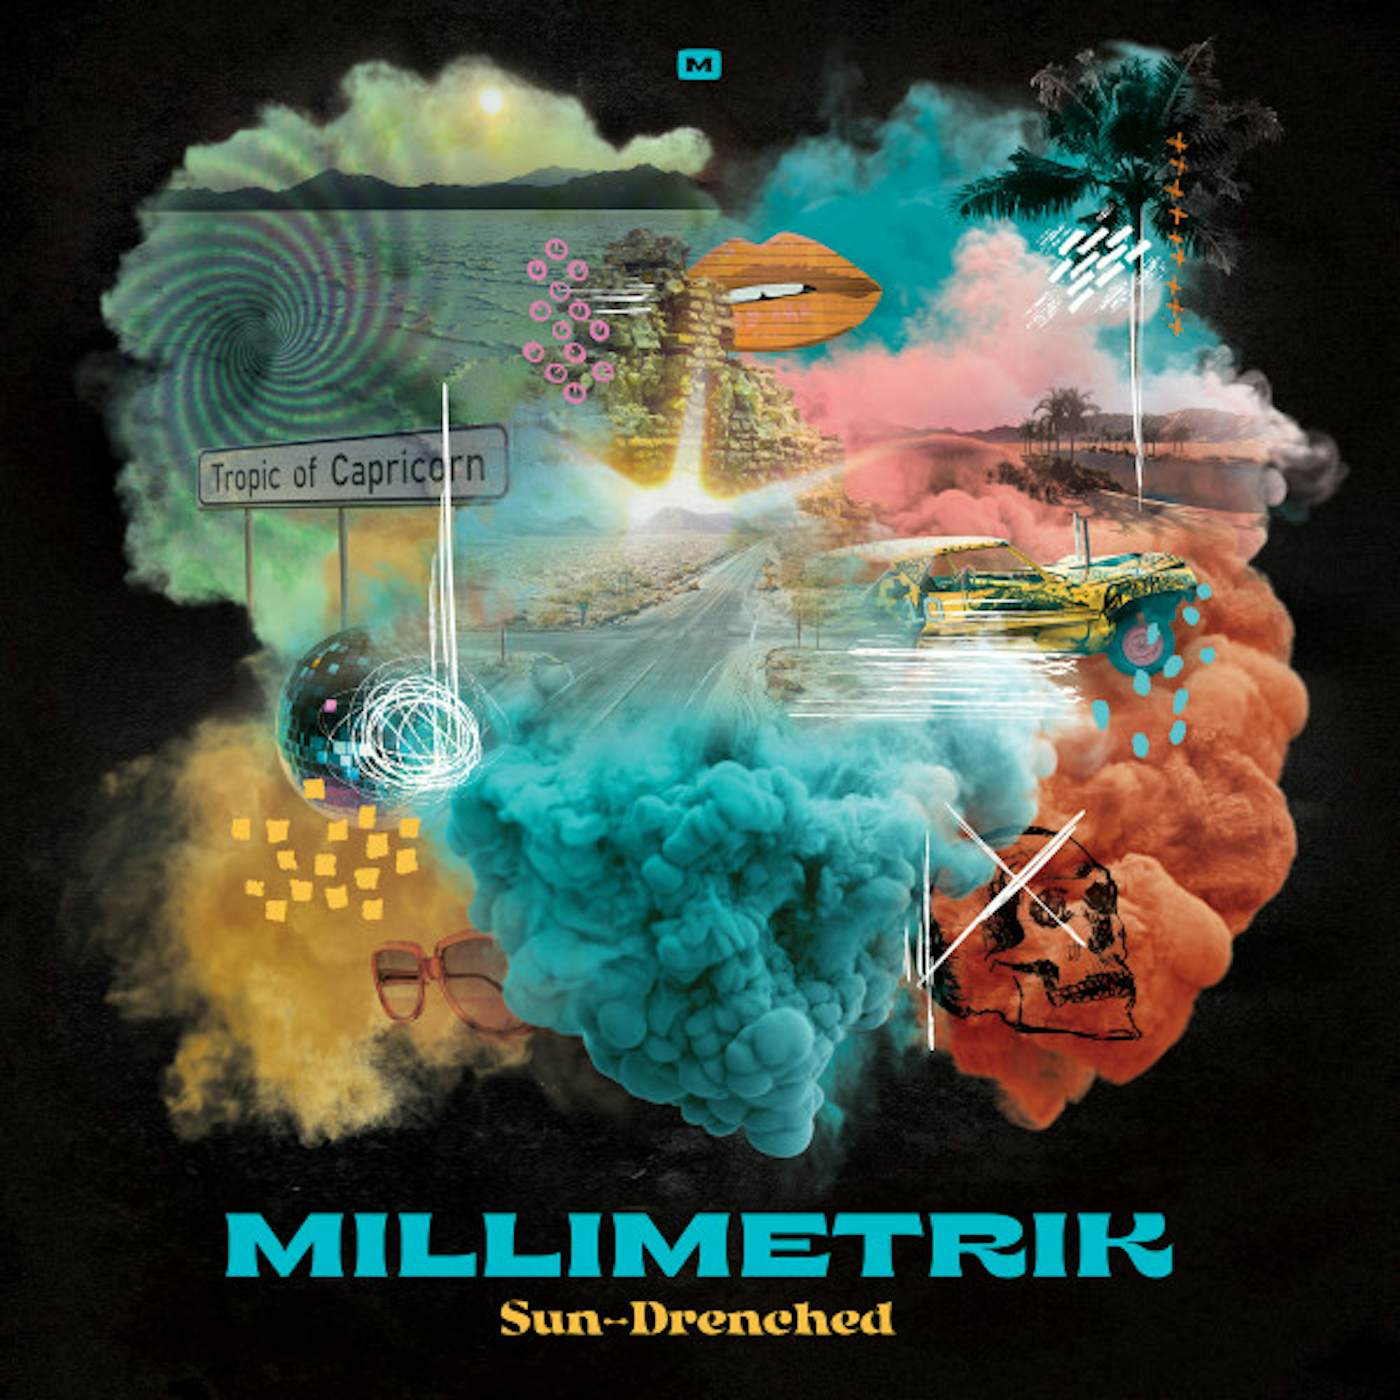 Millimetrik Sun-Drenched Vinyl Record